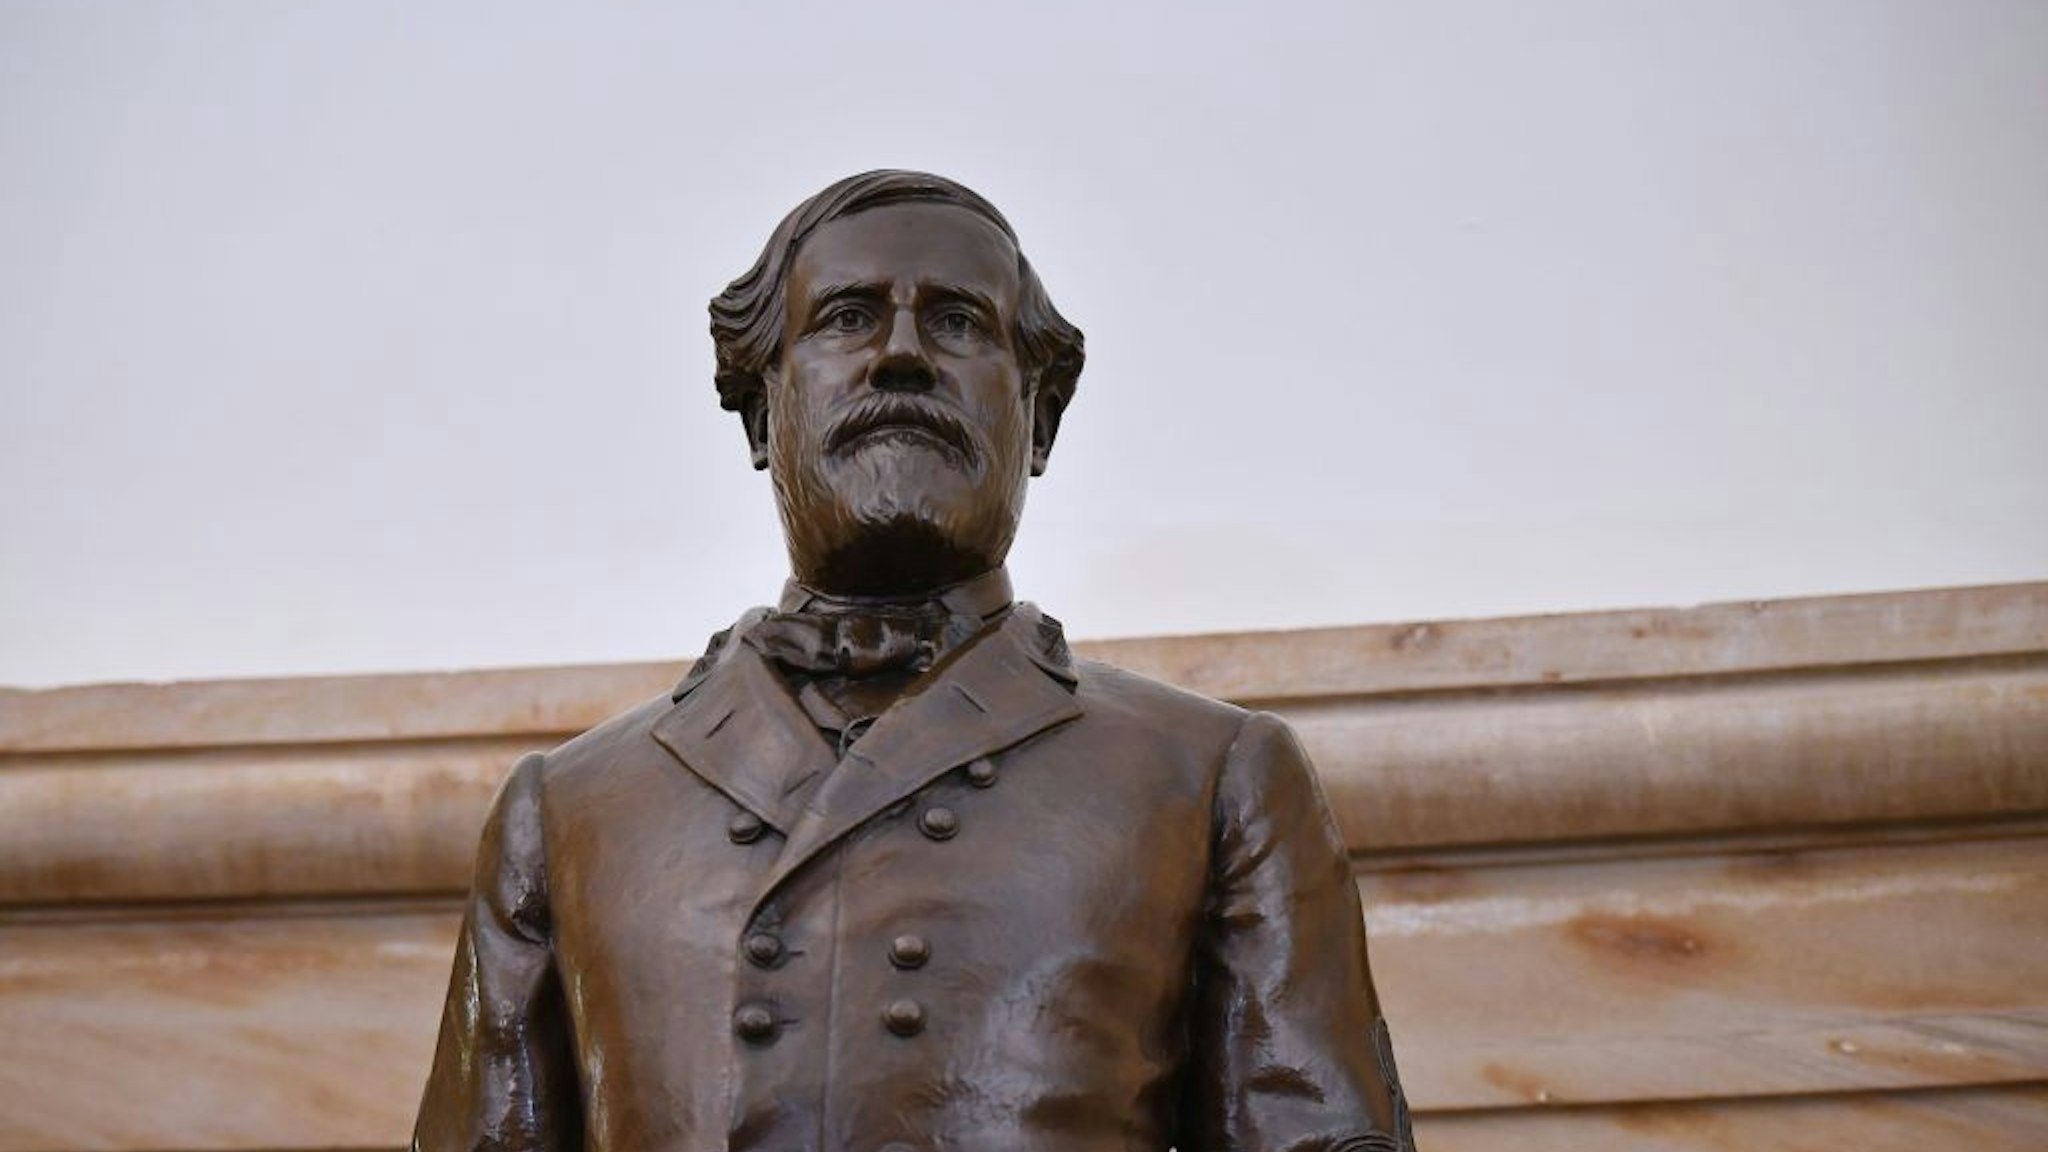 Robert E. Lee statue in U.S. Capitol